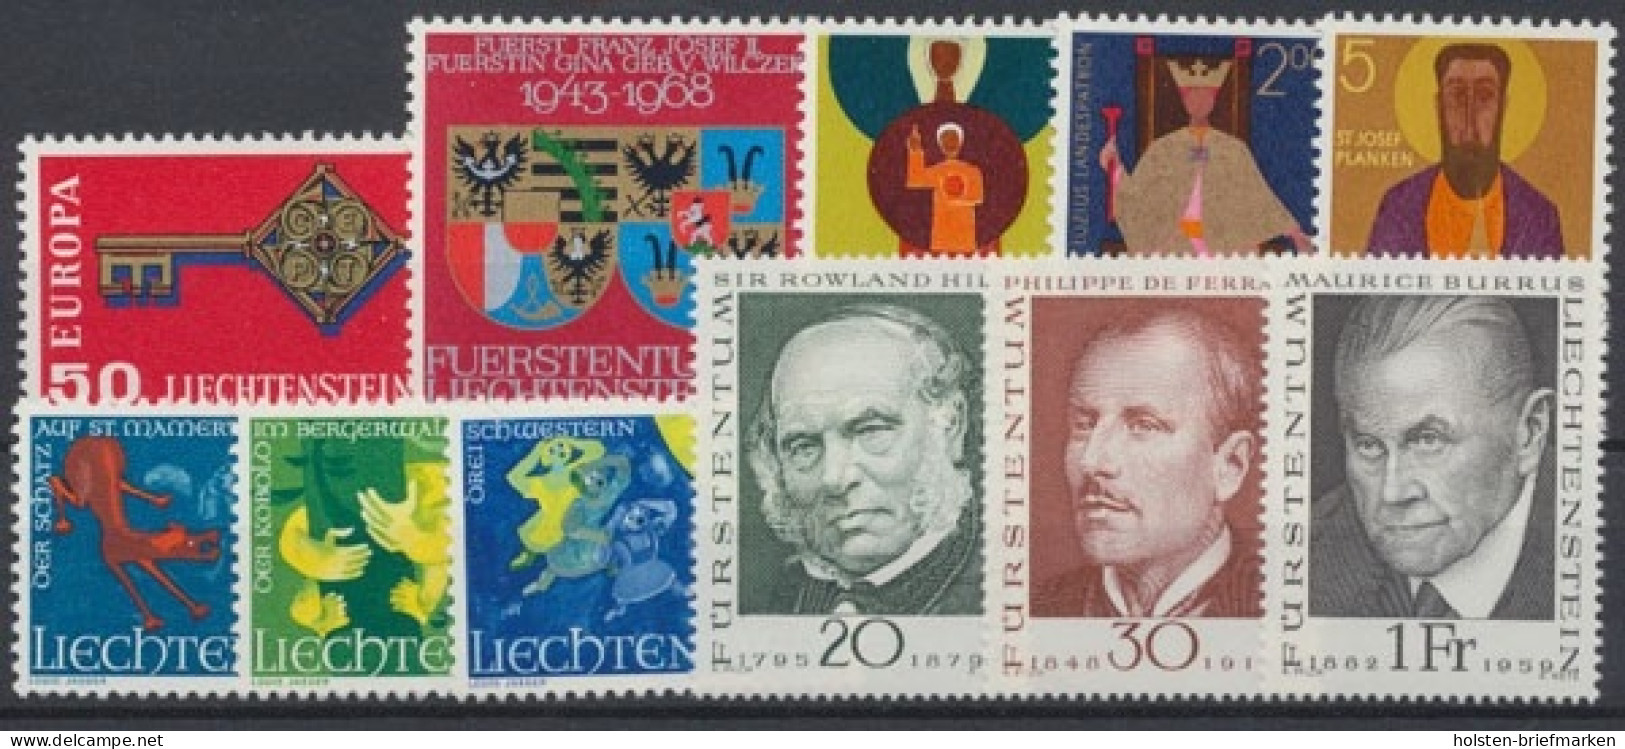 Liechtenstein, MiNr. 495-505, Jahrgang 1968, Postfrisch - Full Years